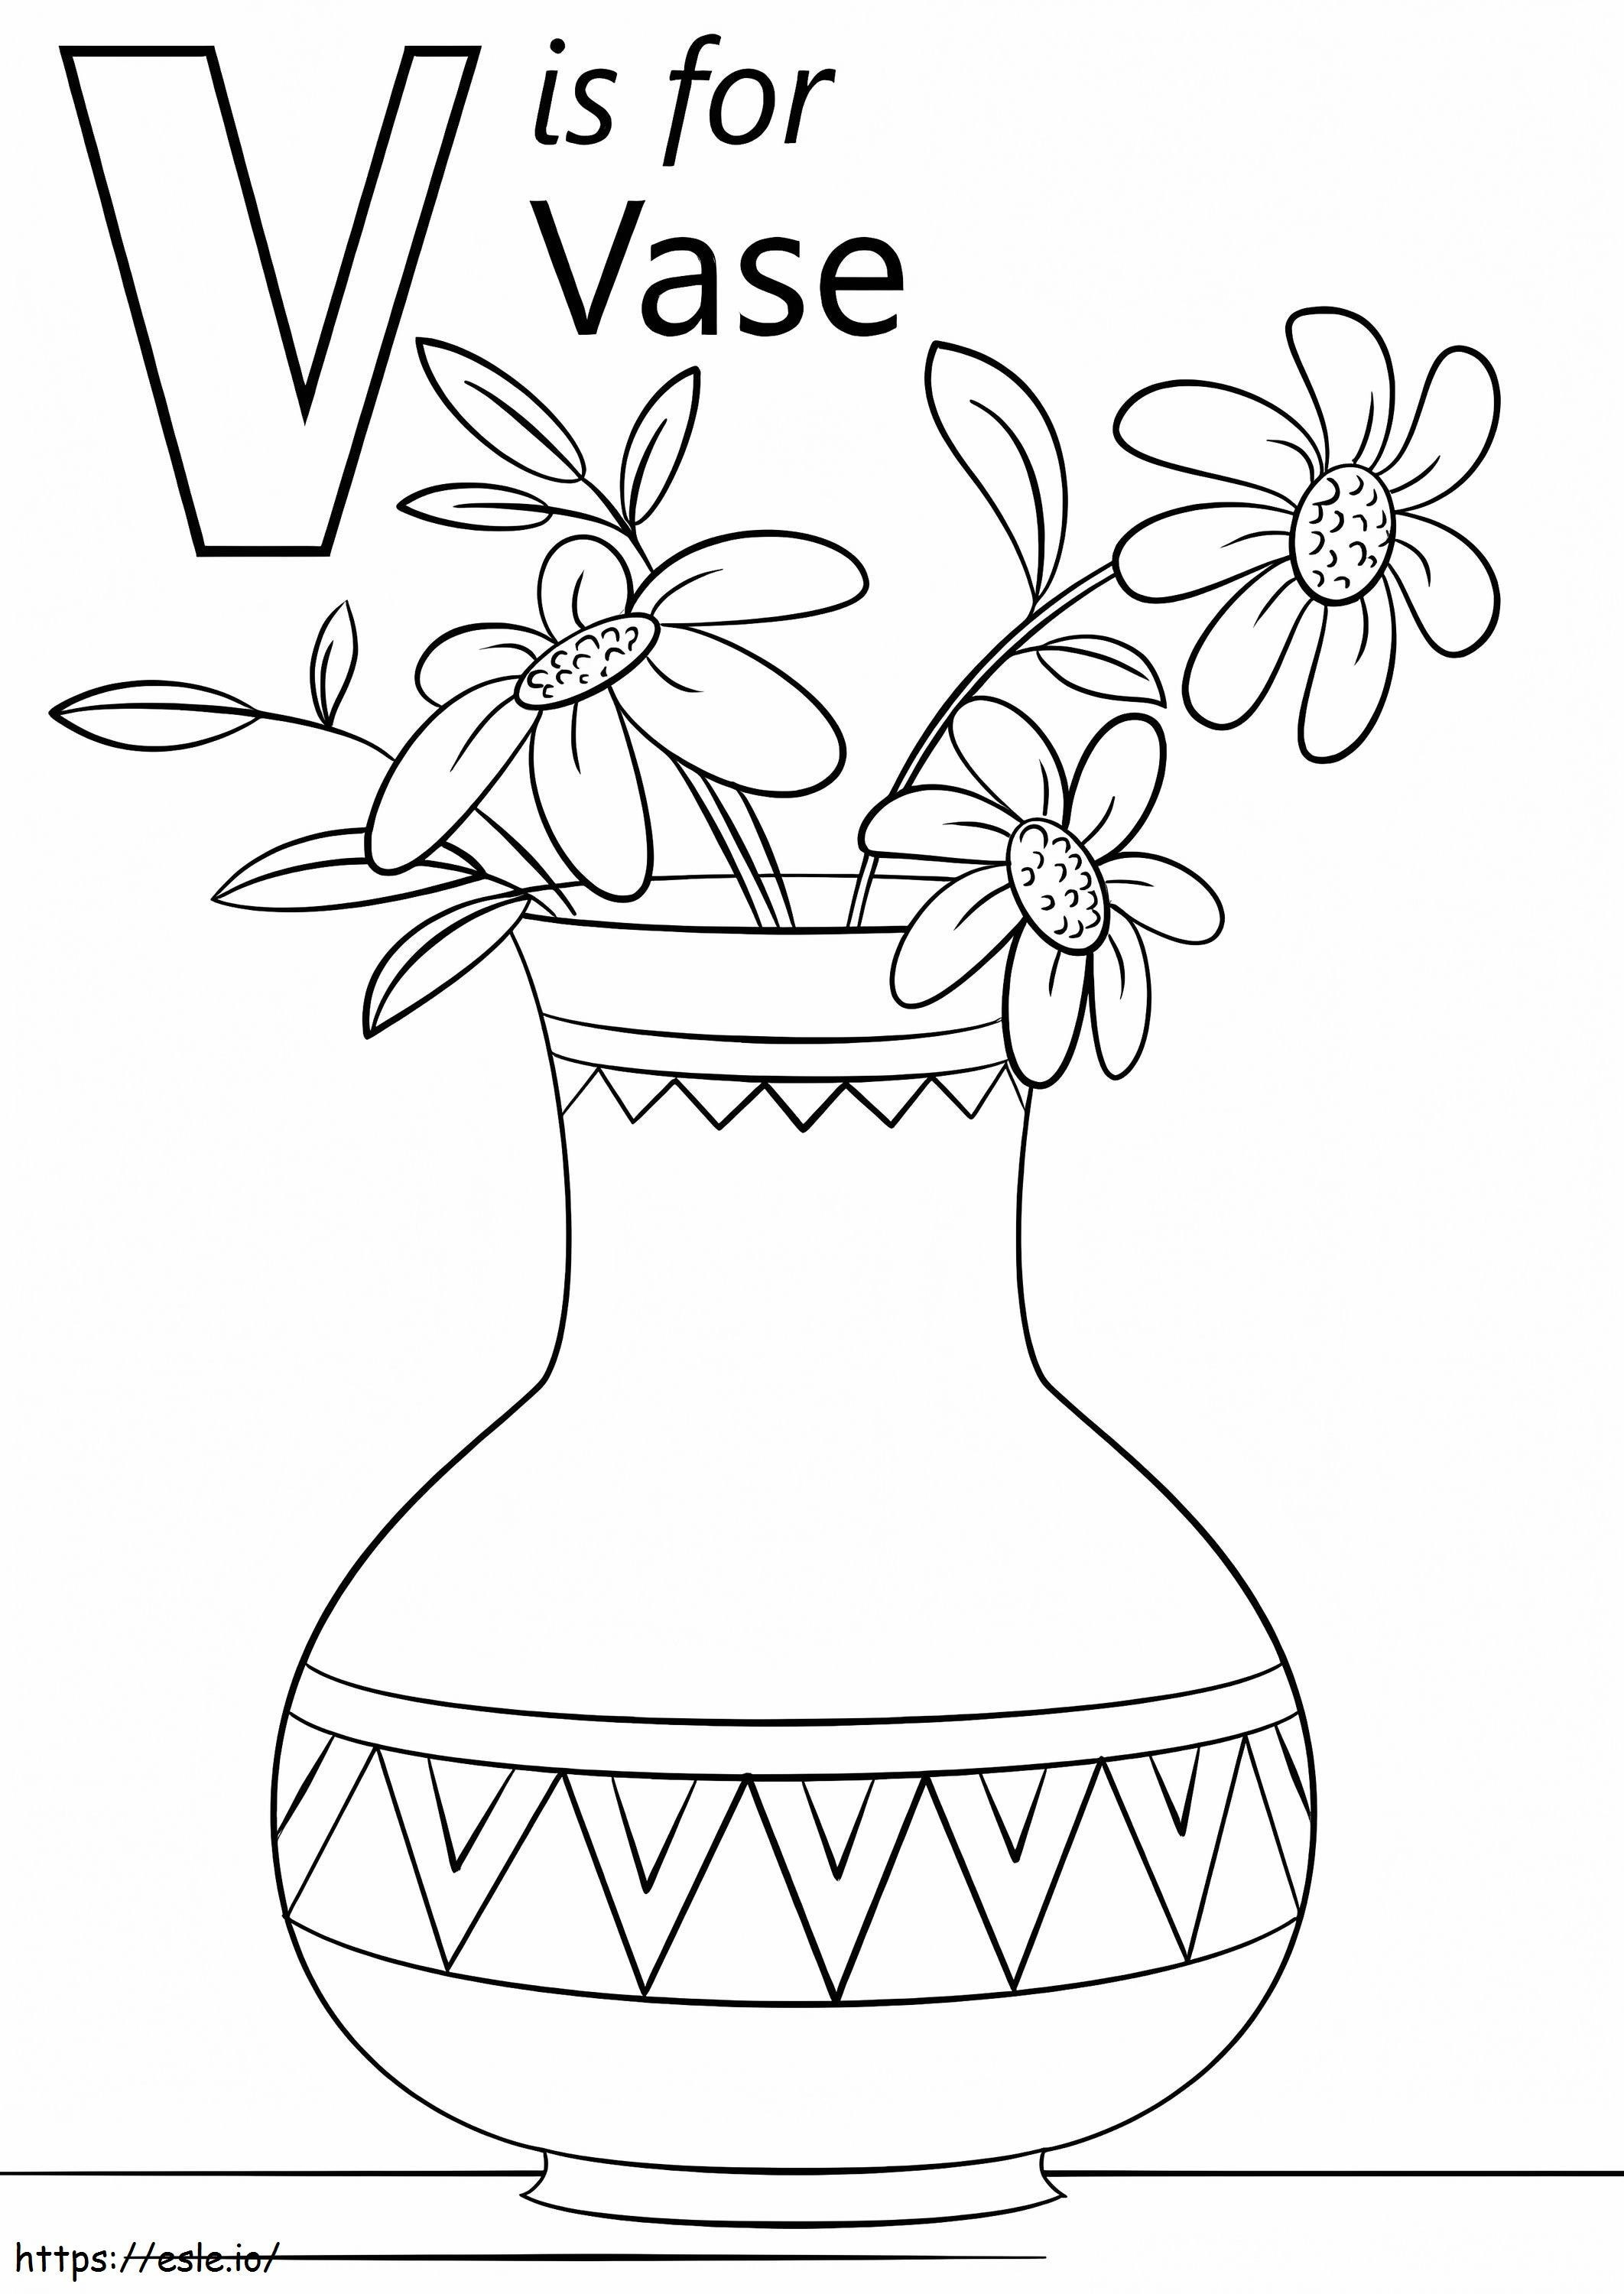 Vase Letter V coloring page